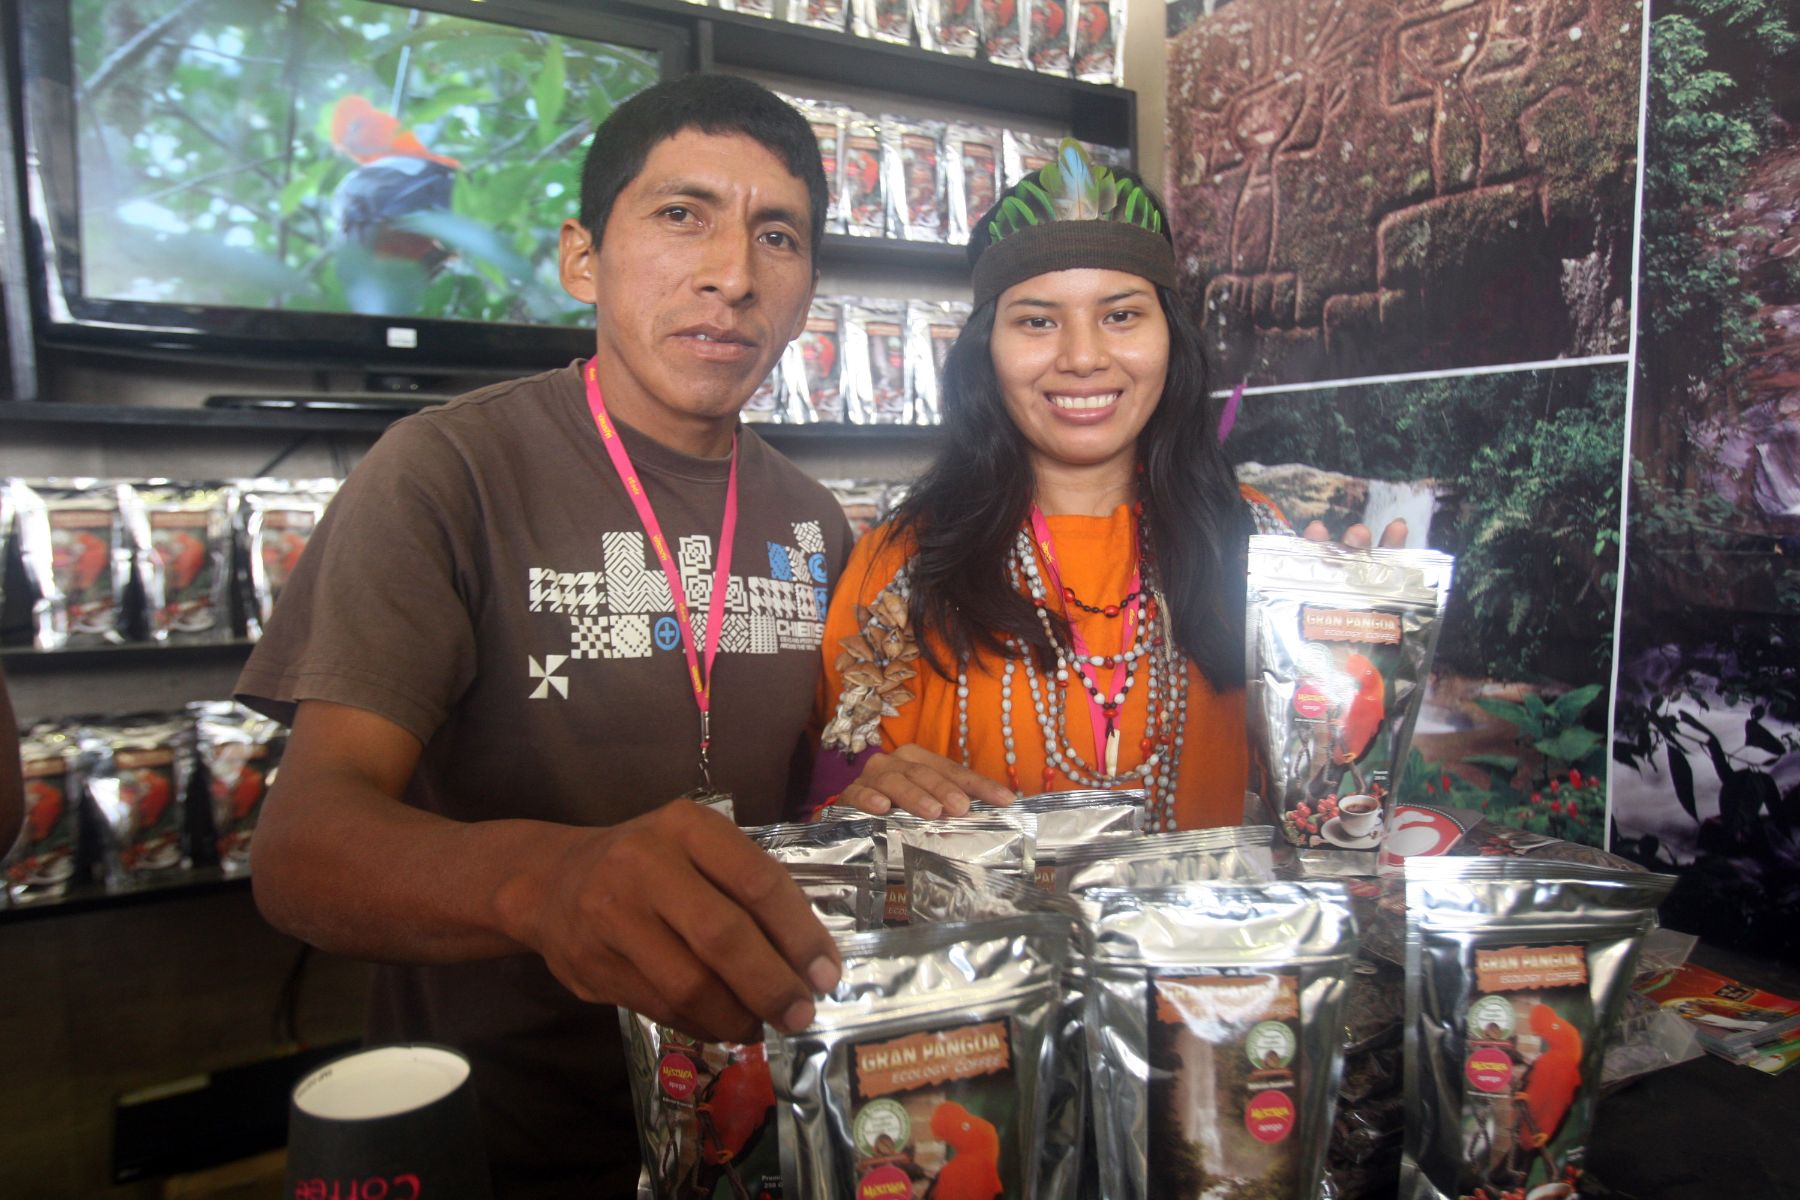 Cafe de altura ofrecido por la comunidad distrital de Pangoa, región Junín,  en la Feria Gastronomica Mistura 2013. ANDINA/Héctor Vinces